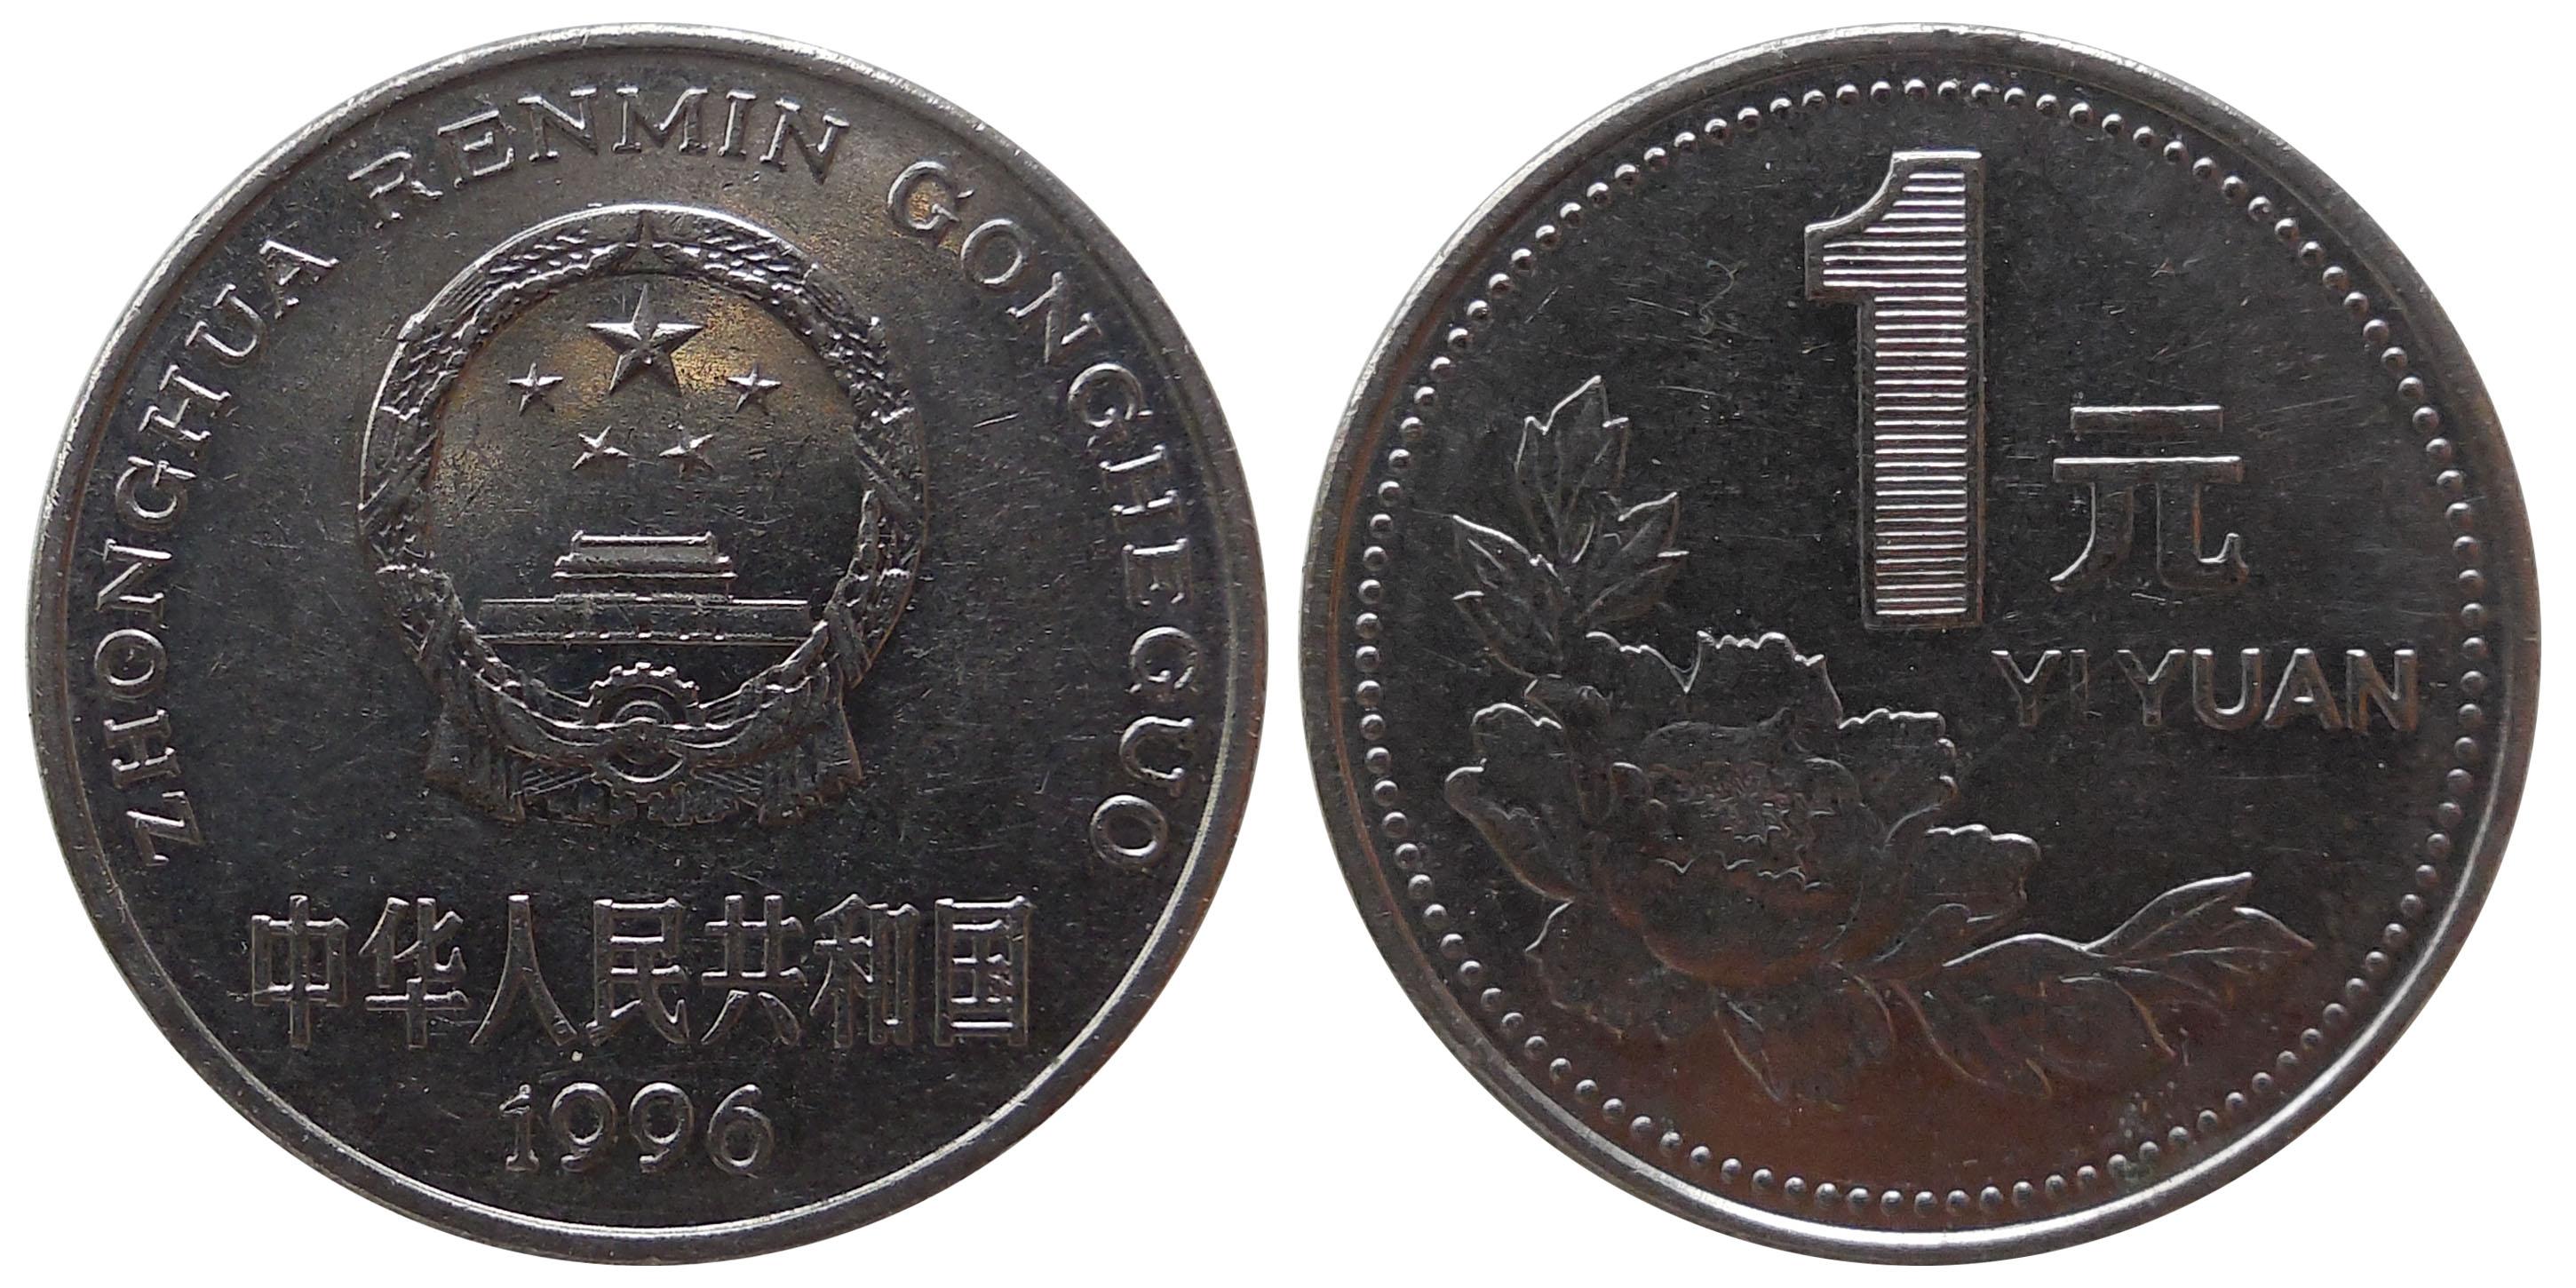 老阿根廷硬币 库存图片. 图片 包括有 老阿根廷硬币 - 6393161